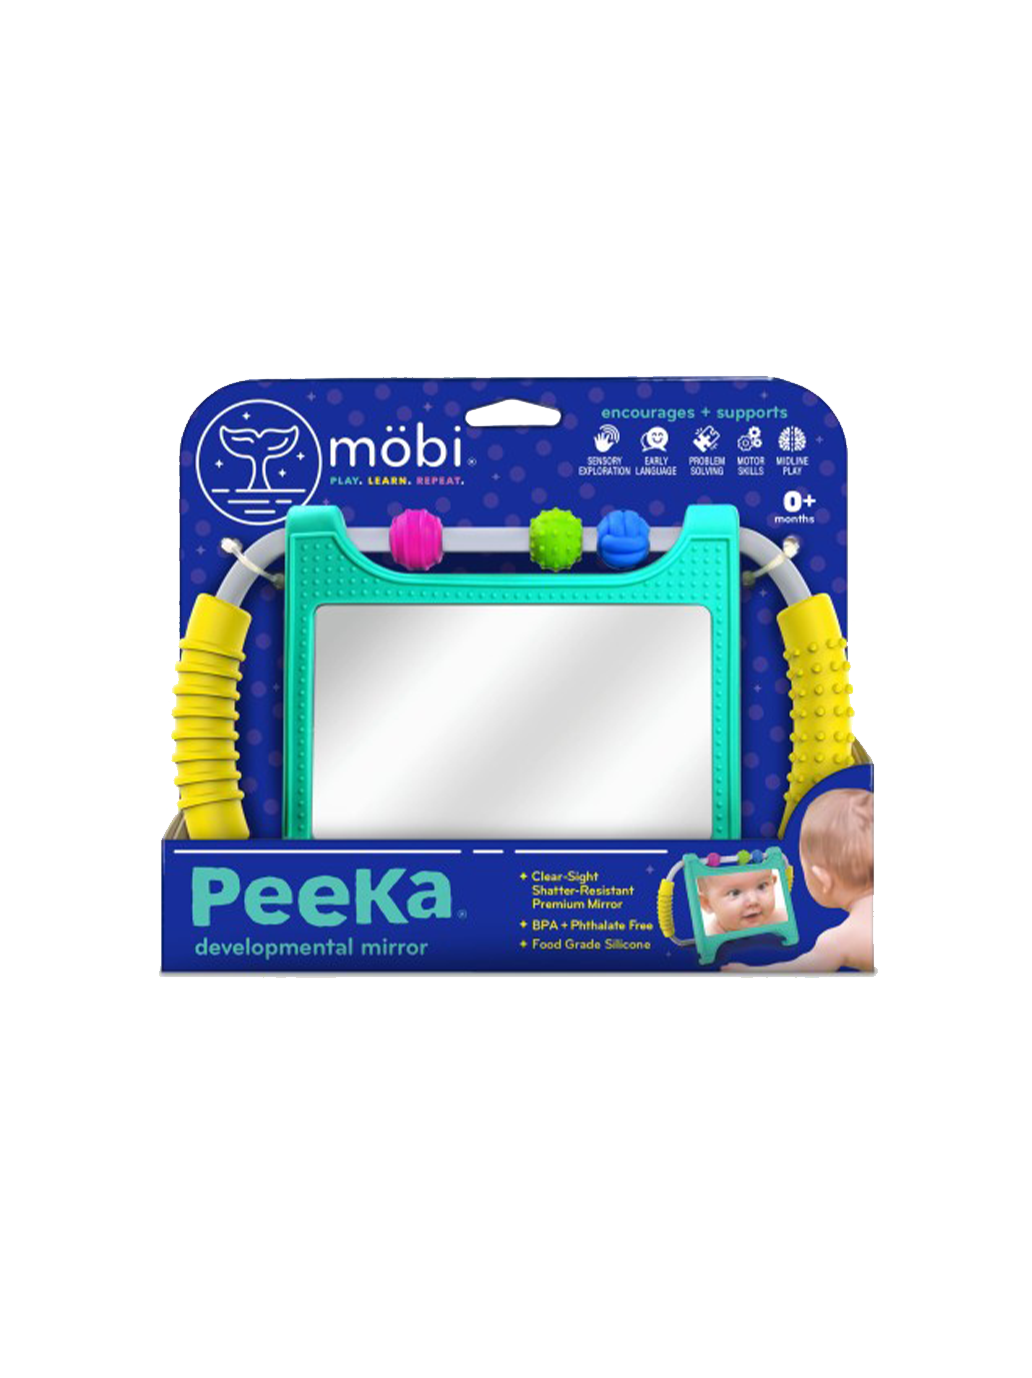 Peeka's toddler mirror